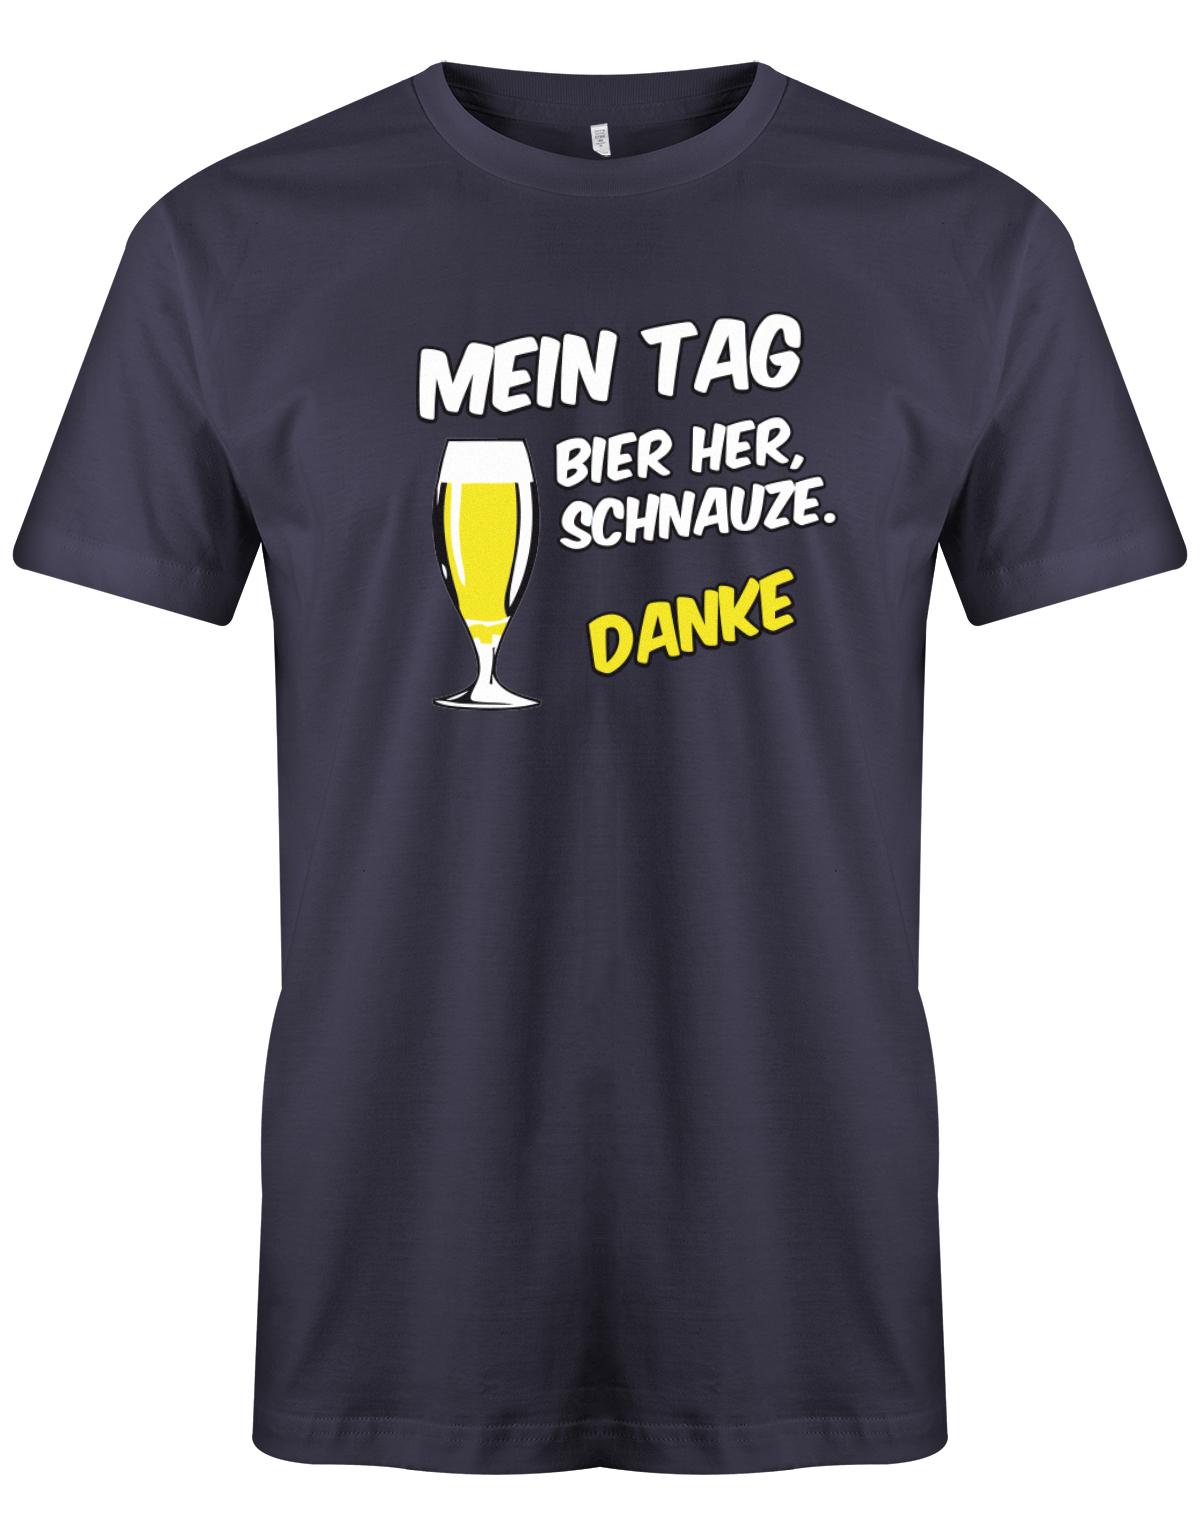 Mein-Tag-Bier-Her-Schnauze-Danke-Vatertag-Herren-Shirt-Navy